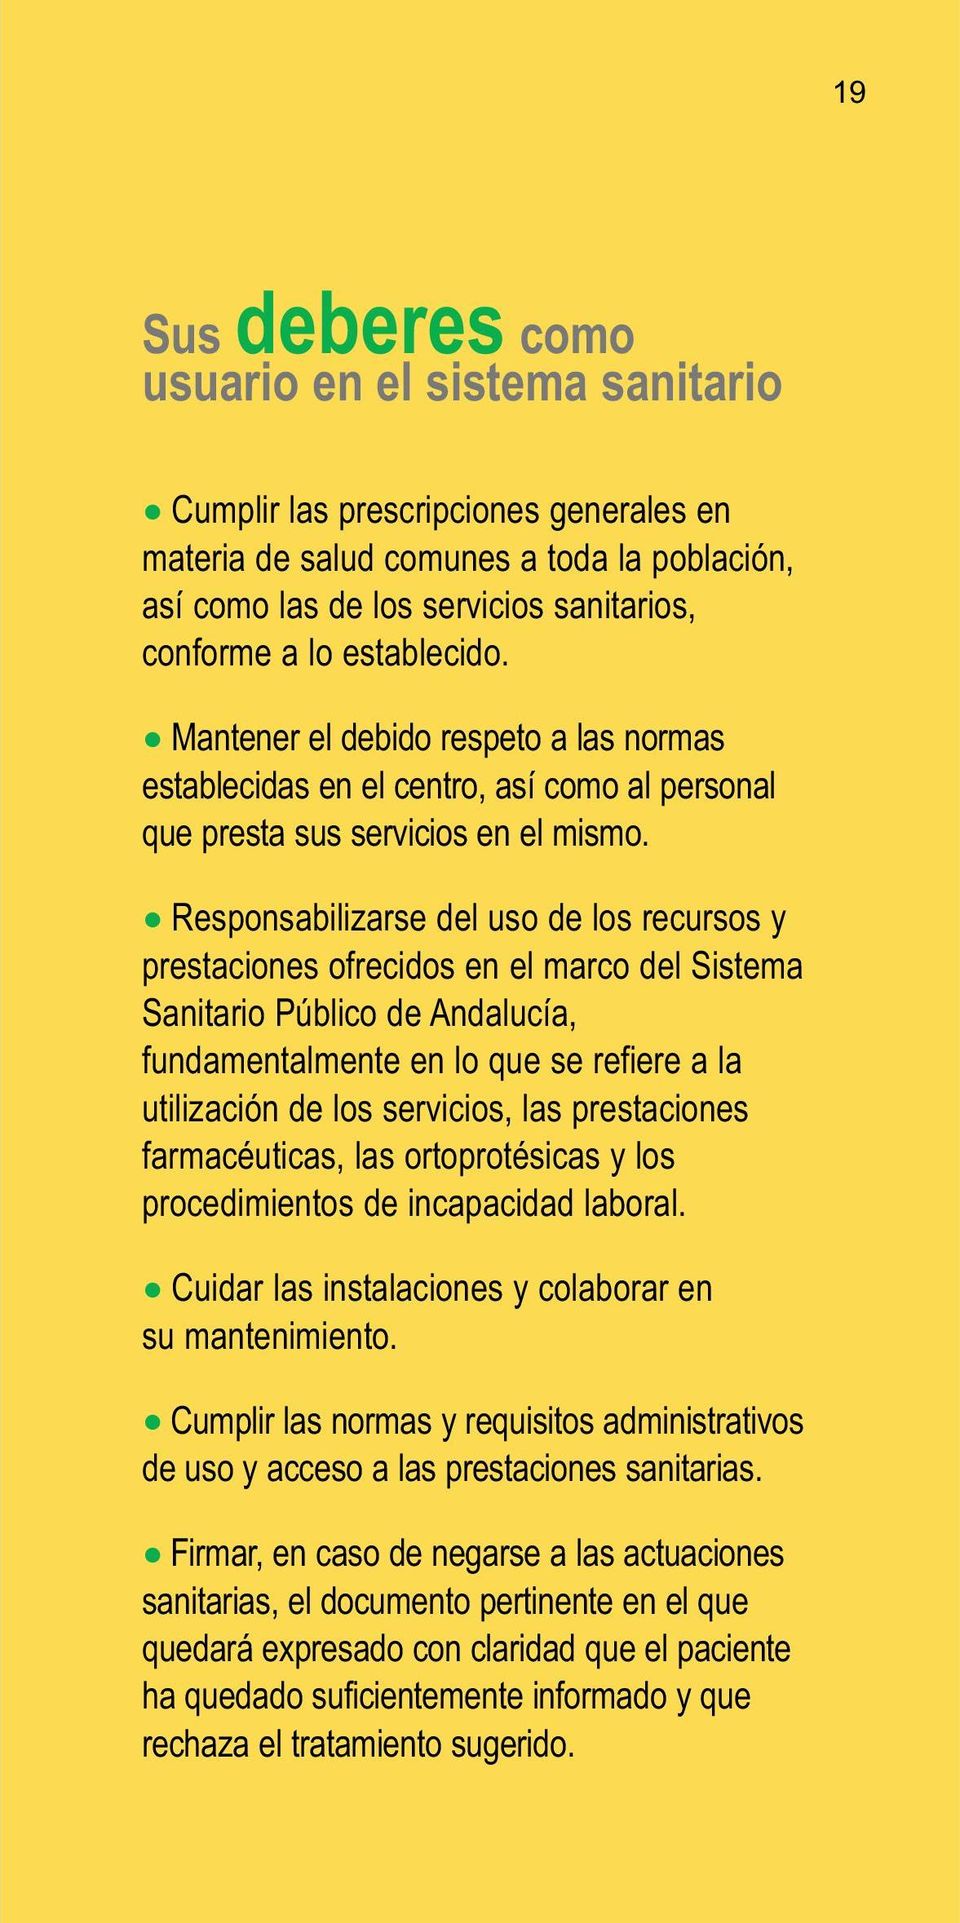 Responsabilizarse del uso de los recursos y prestaciones ofrecidos en el marco del Sistema Sanitario Público de Andalucía, fundamentalmente en lo que se refiere a la utilización de los servicios, las